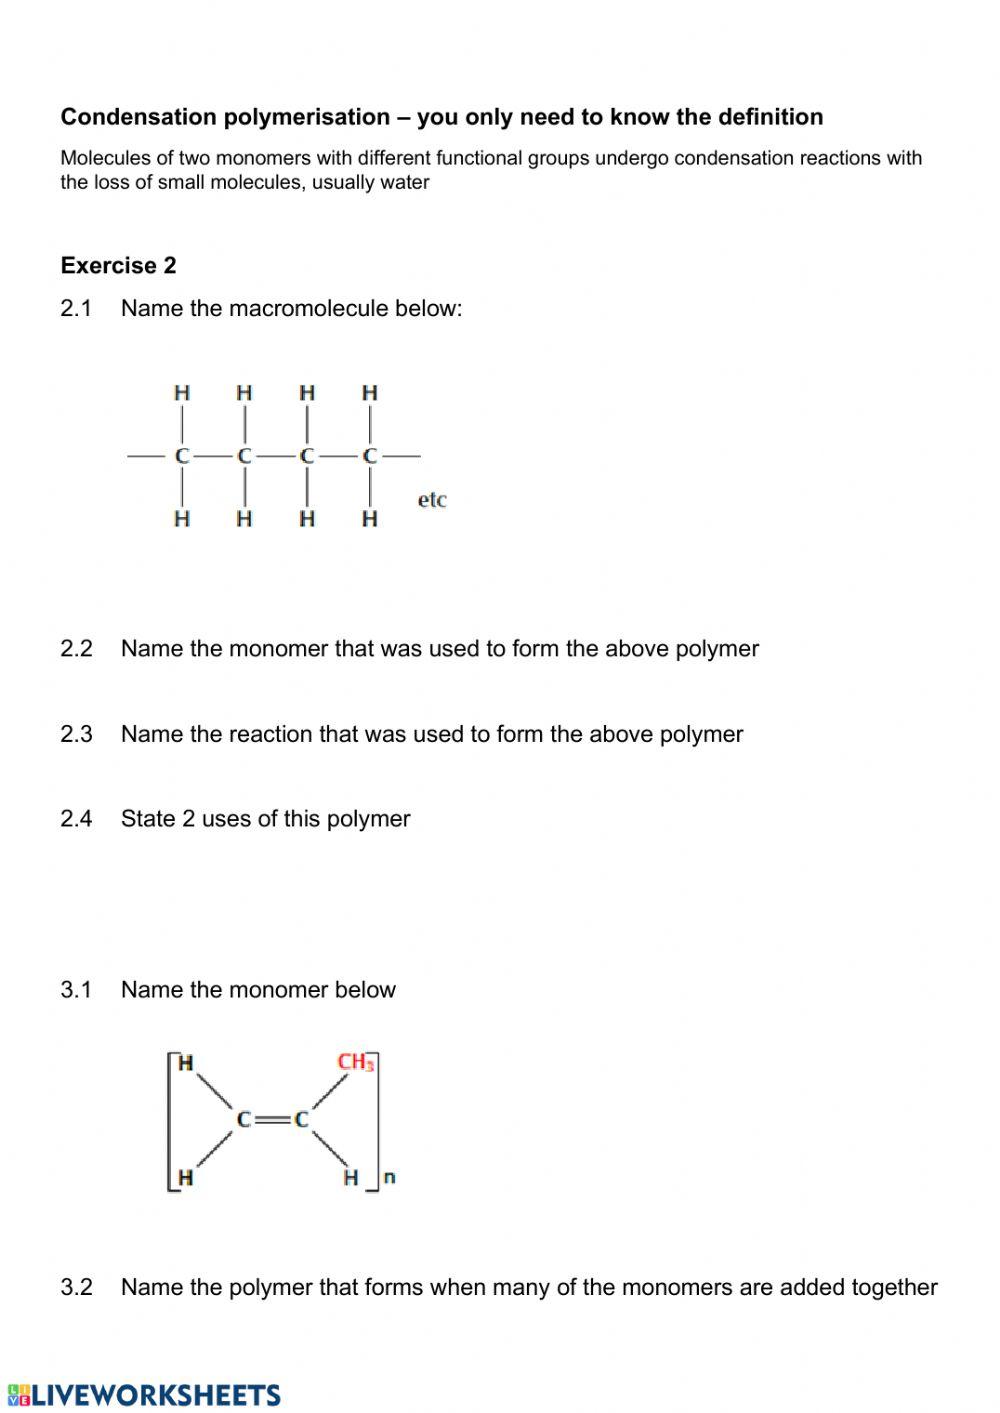 Organic reactions worksheet 6